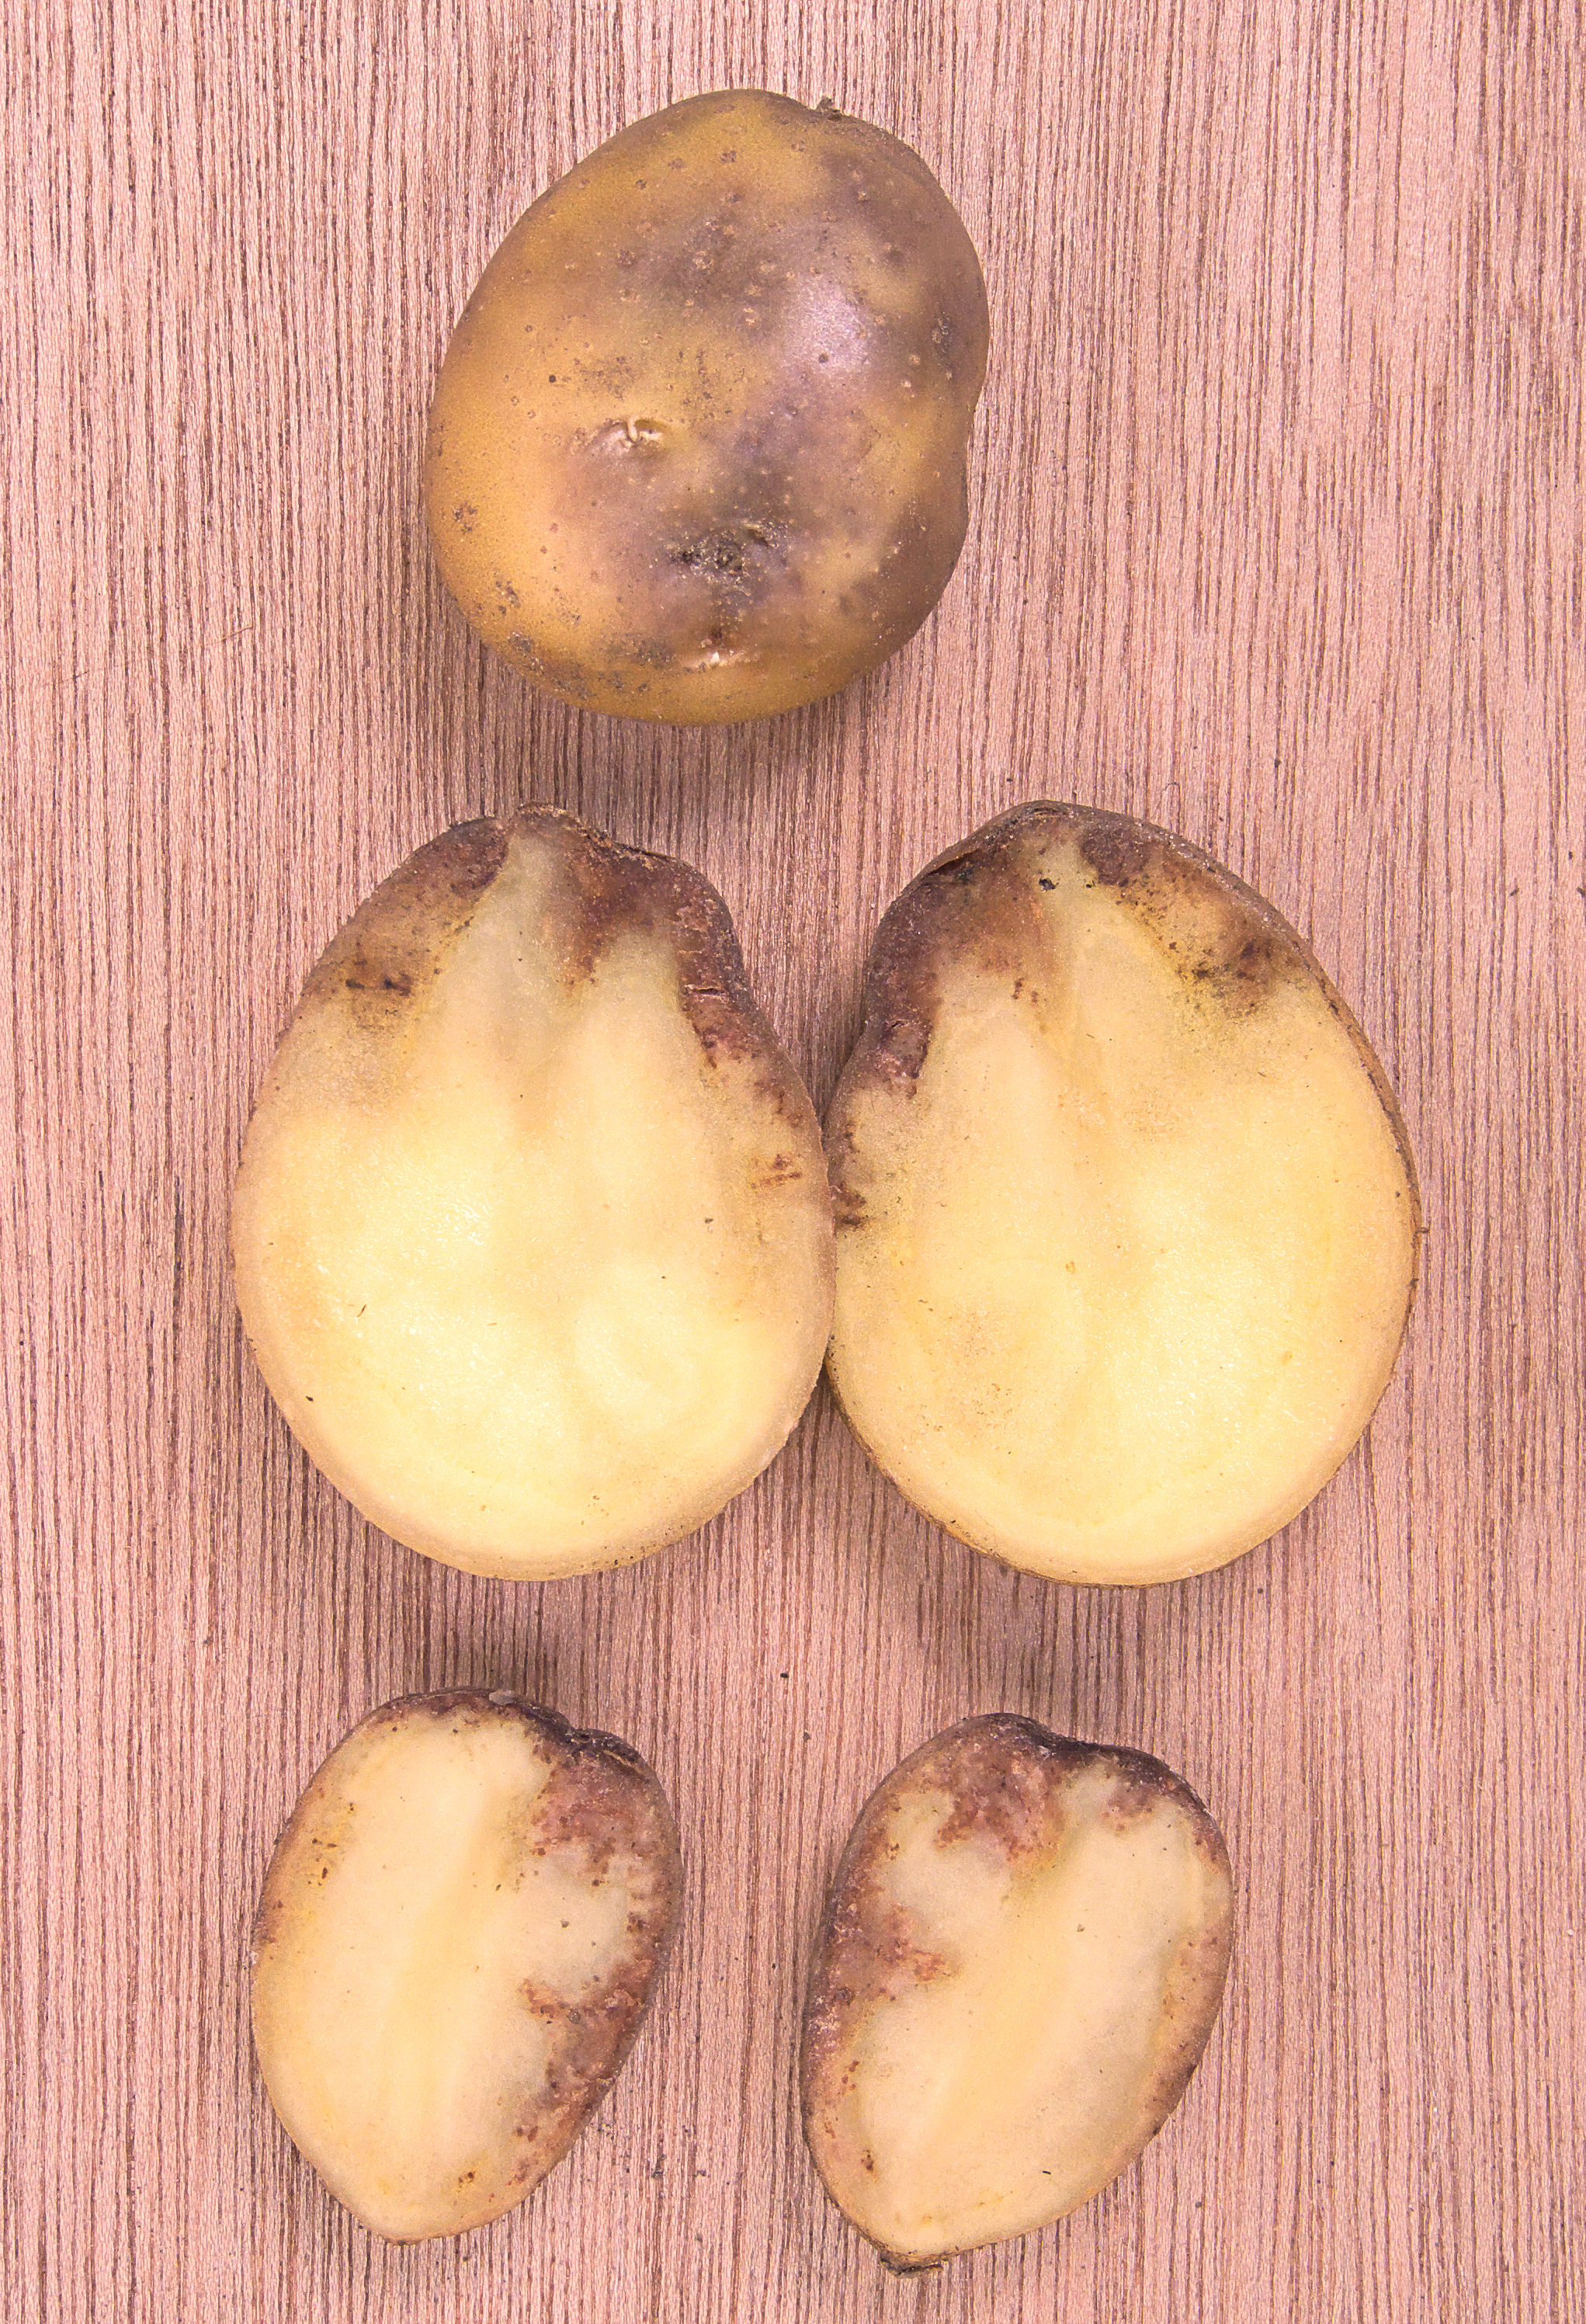 Kartoffeln mit Symptomen der Kraut- und Knollenfäule